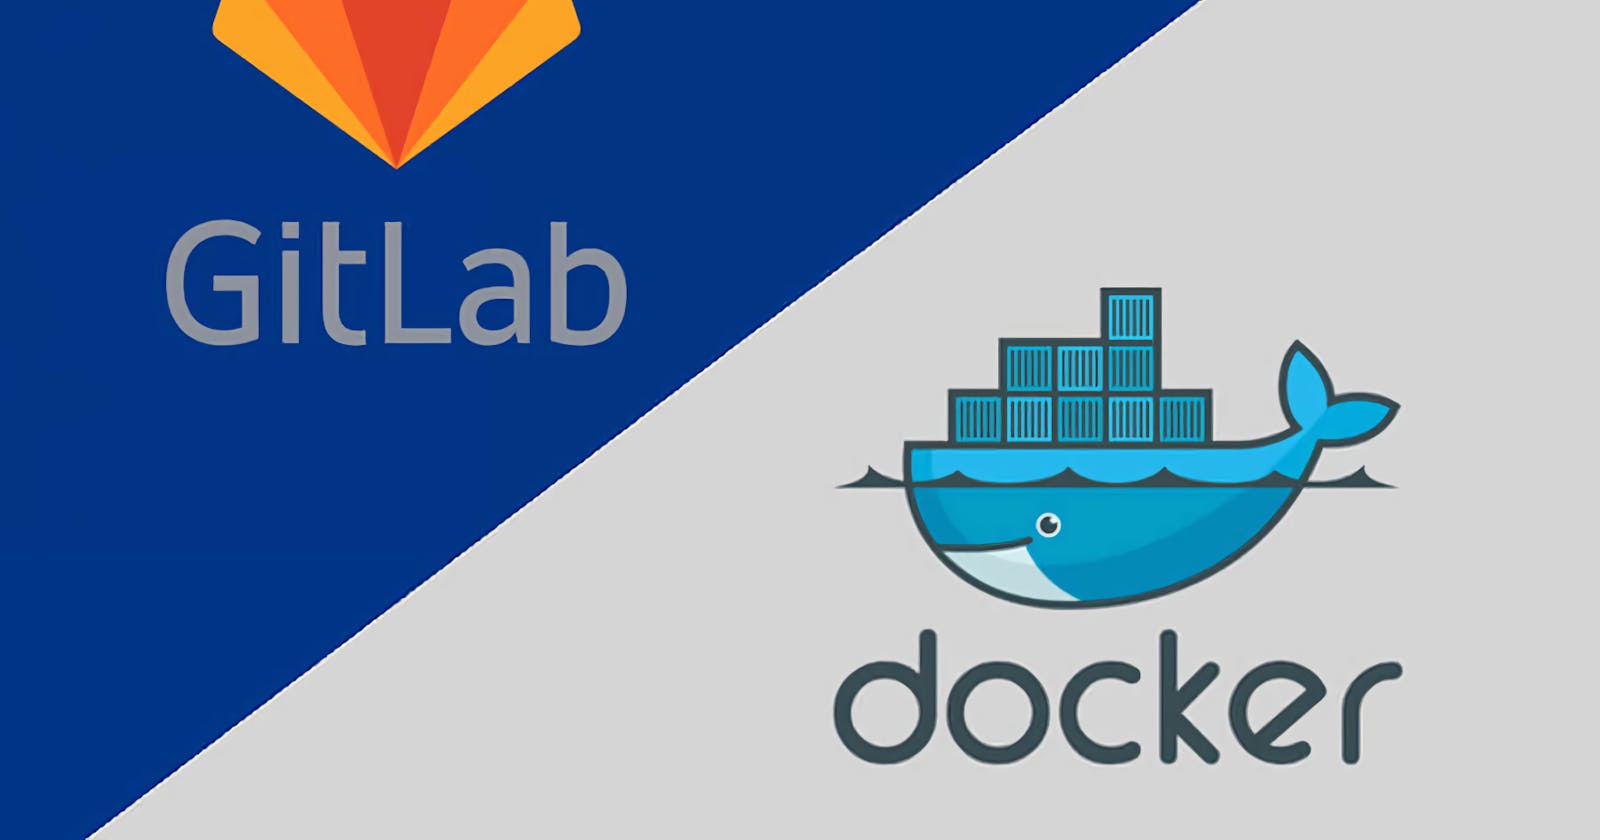 使用Docker快速搭建GitLab环境,自建Git服务器托管代码